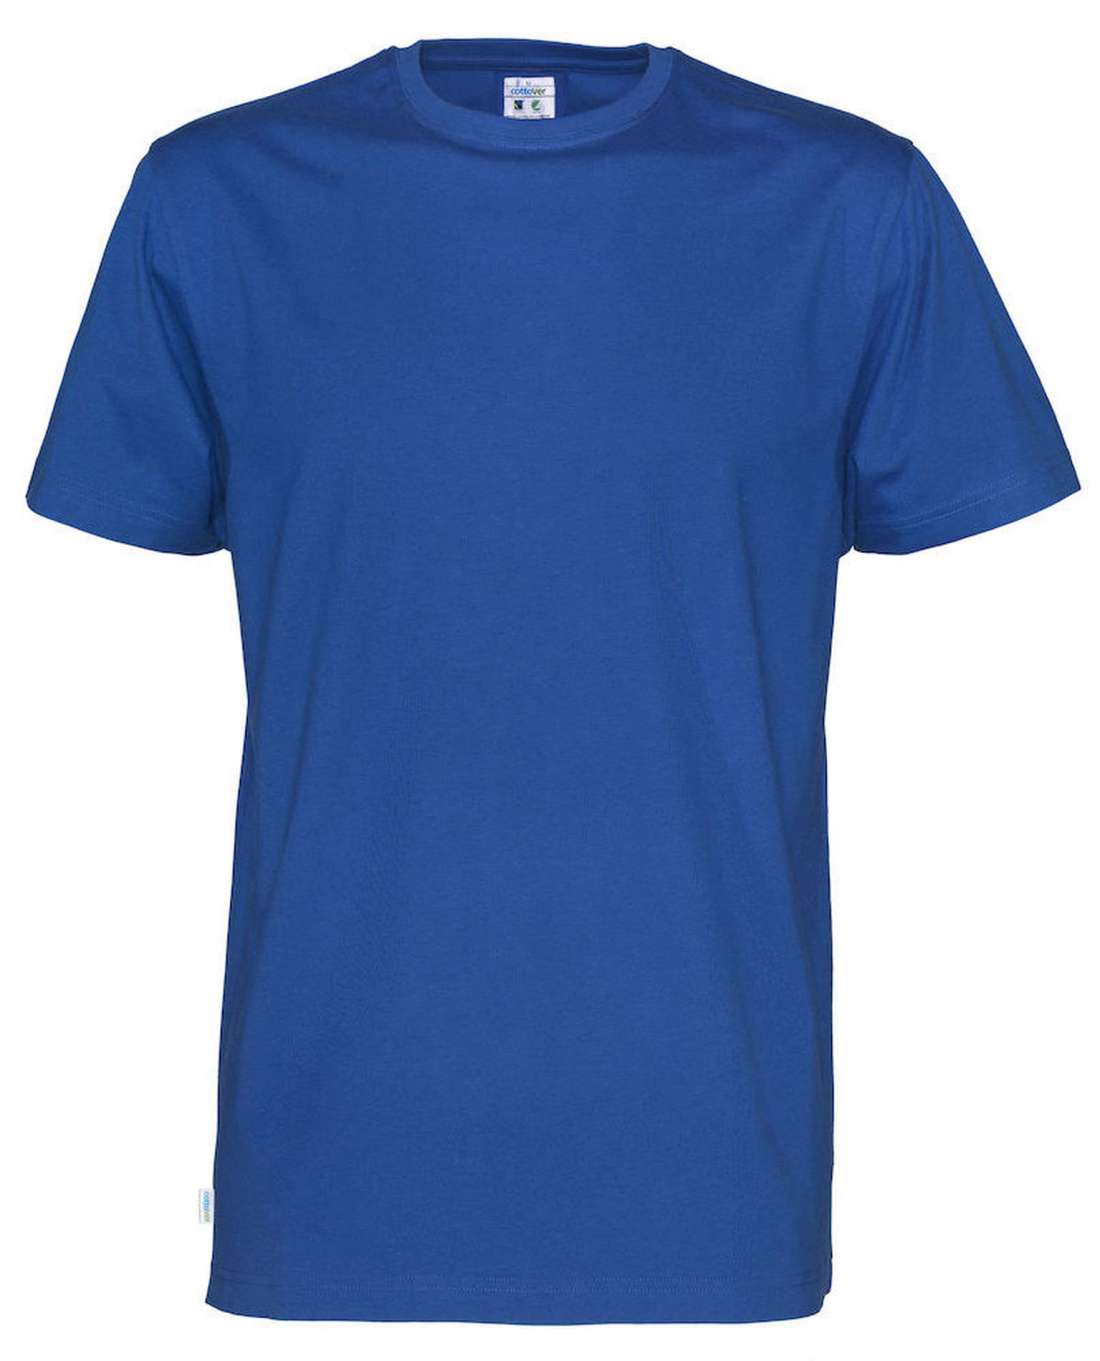 Cottover Miesten t-paita, Sininen